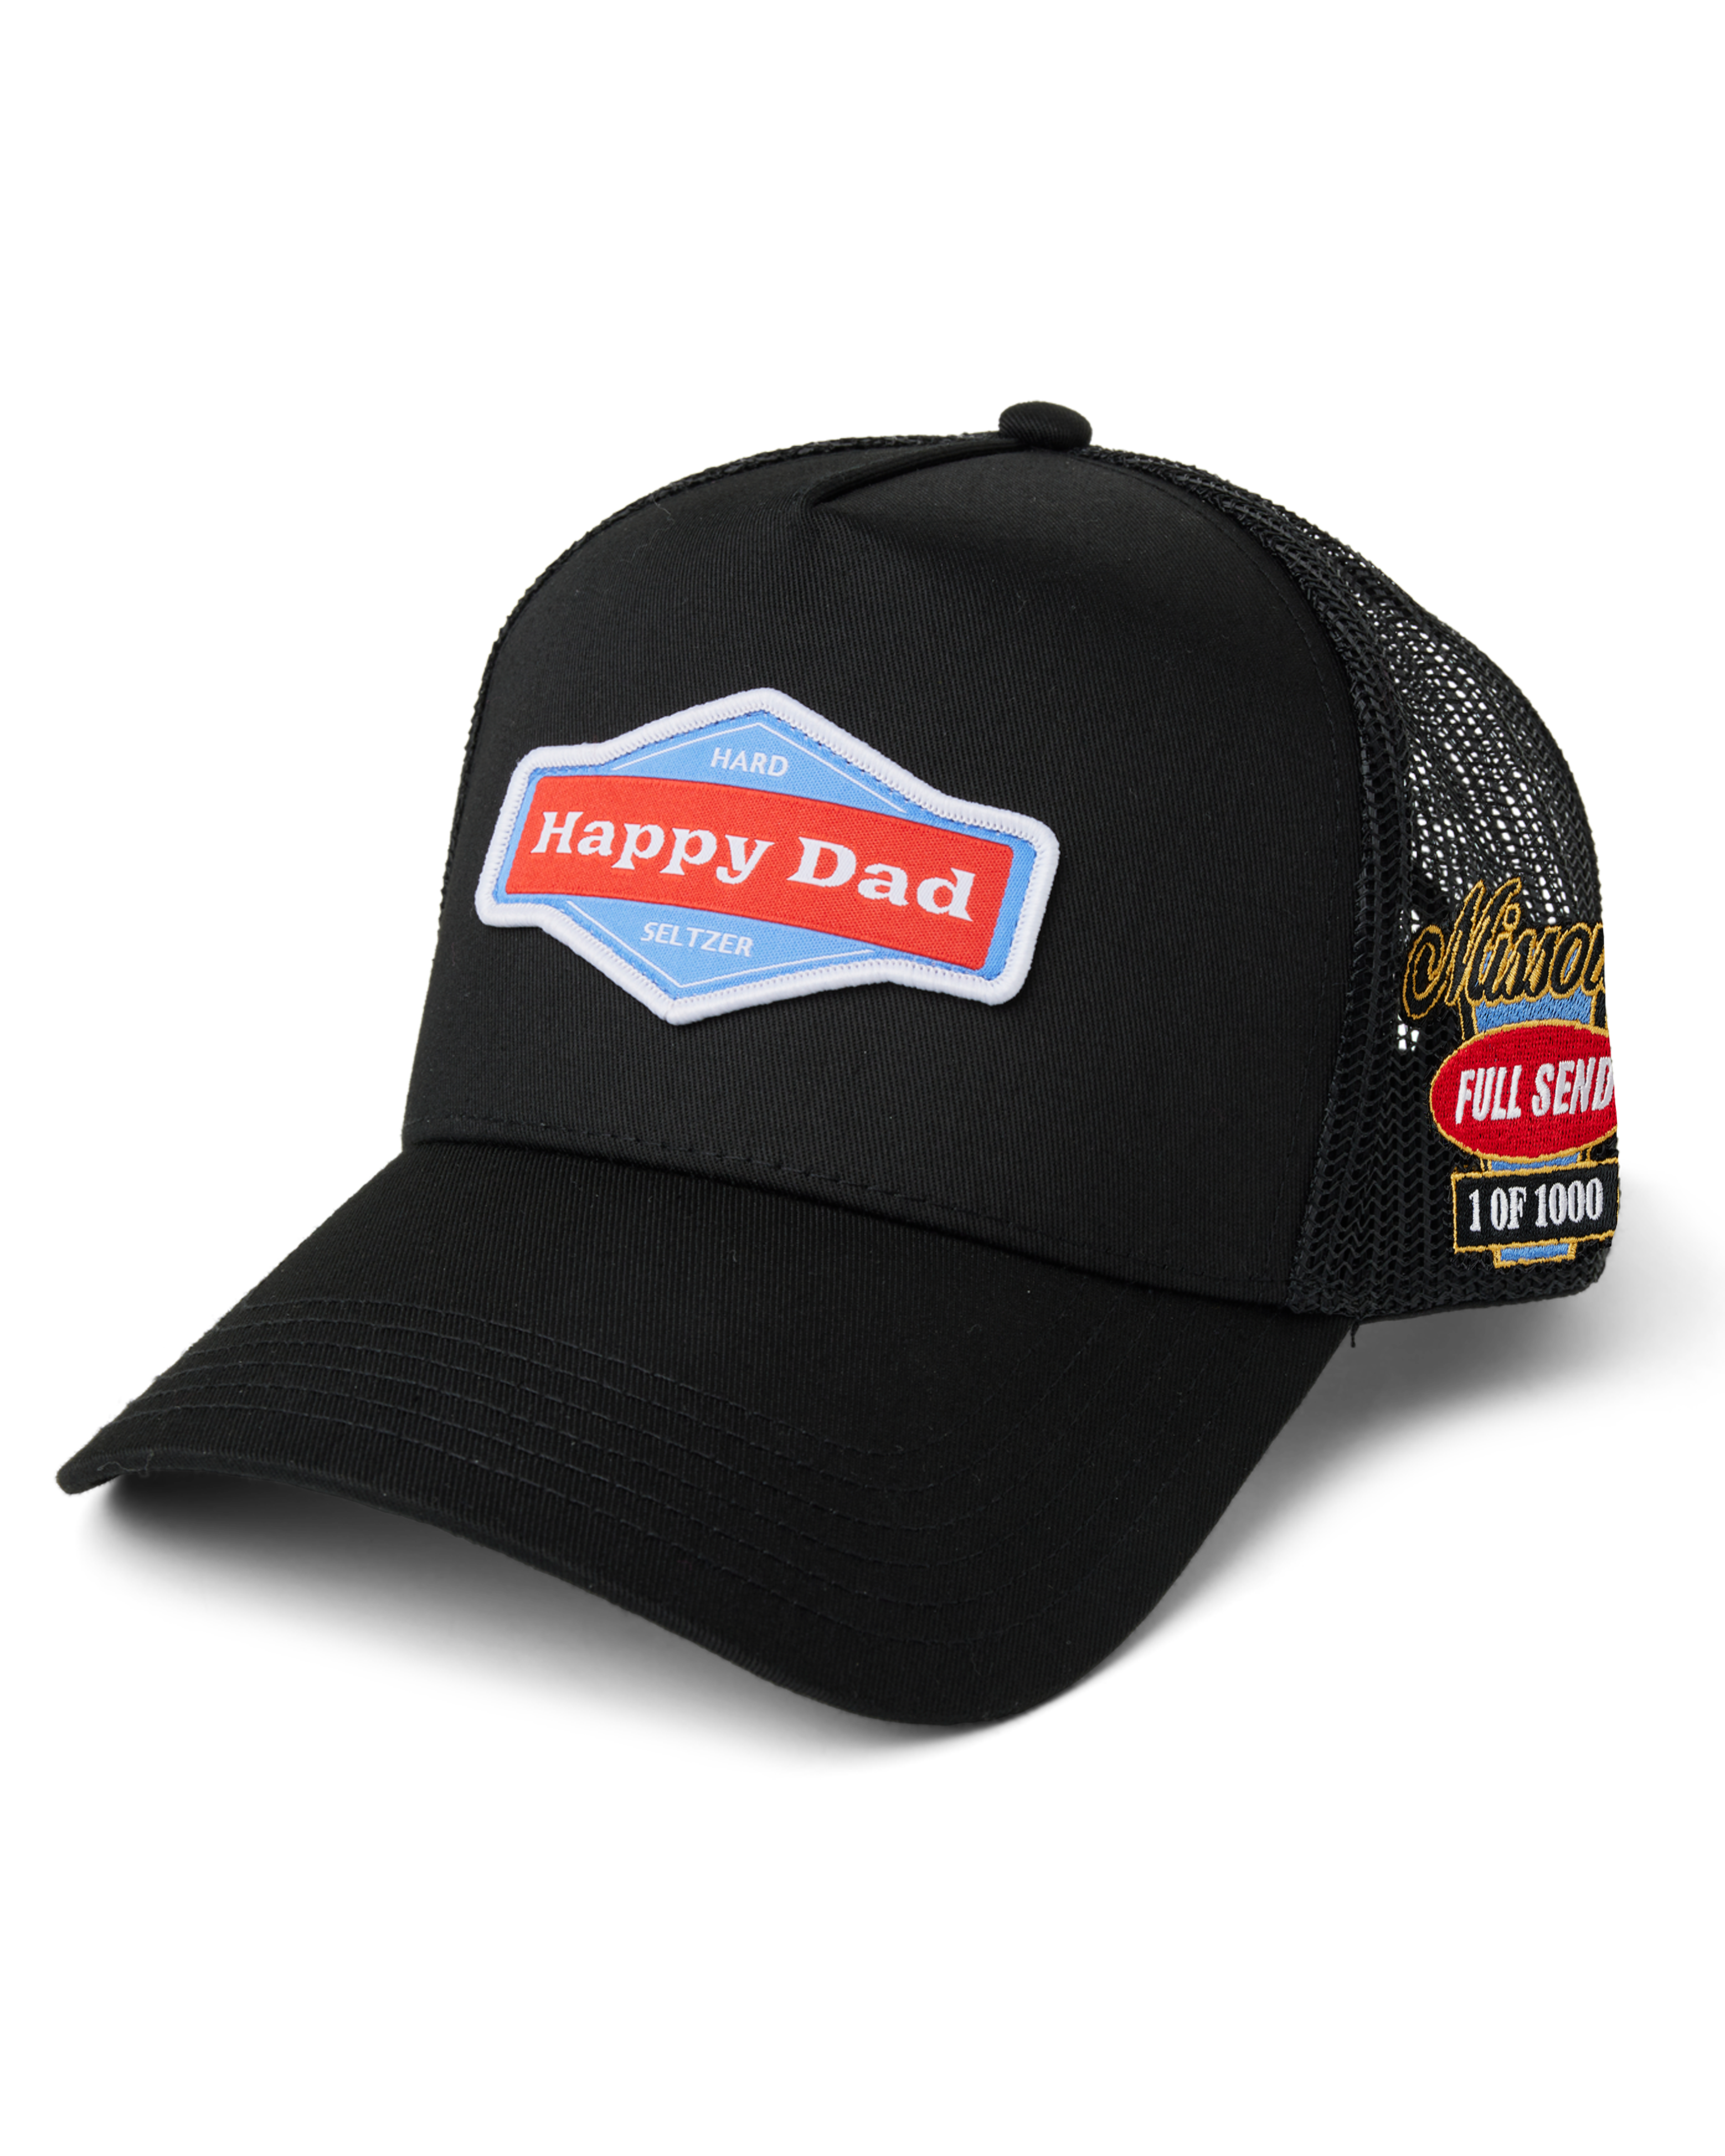 (Limited) Missouri - Happy Dad State Trucker Hat 1 of 1000